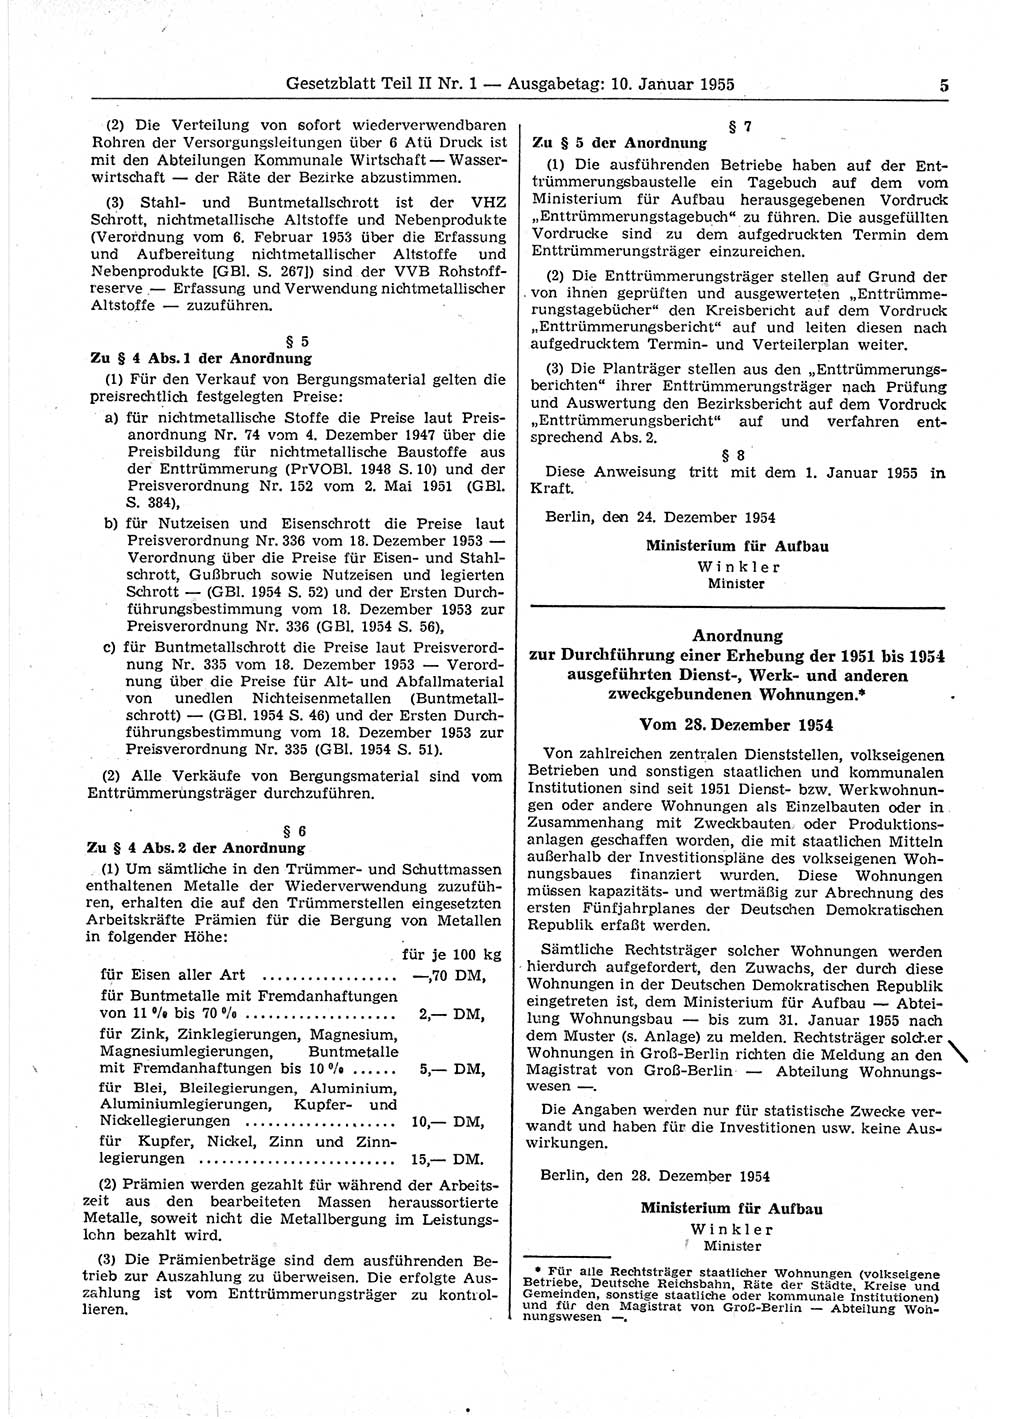 Gesetzblatt (GBl.) der Deutschen Demokratischen Republik (DDR) Teil ⅠⅠ 1955, Seite 5 (GBl. DDR ⅠⅠ 1955, S. 5)